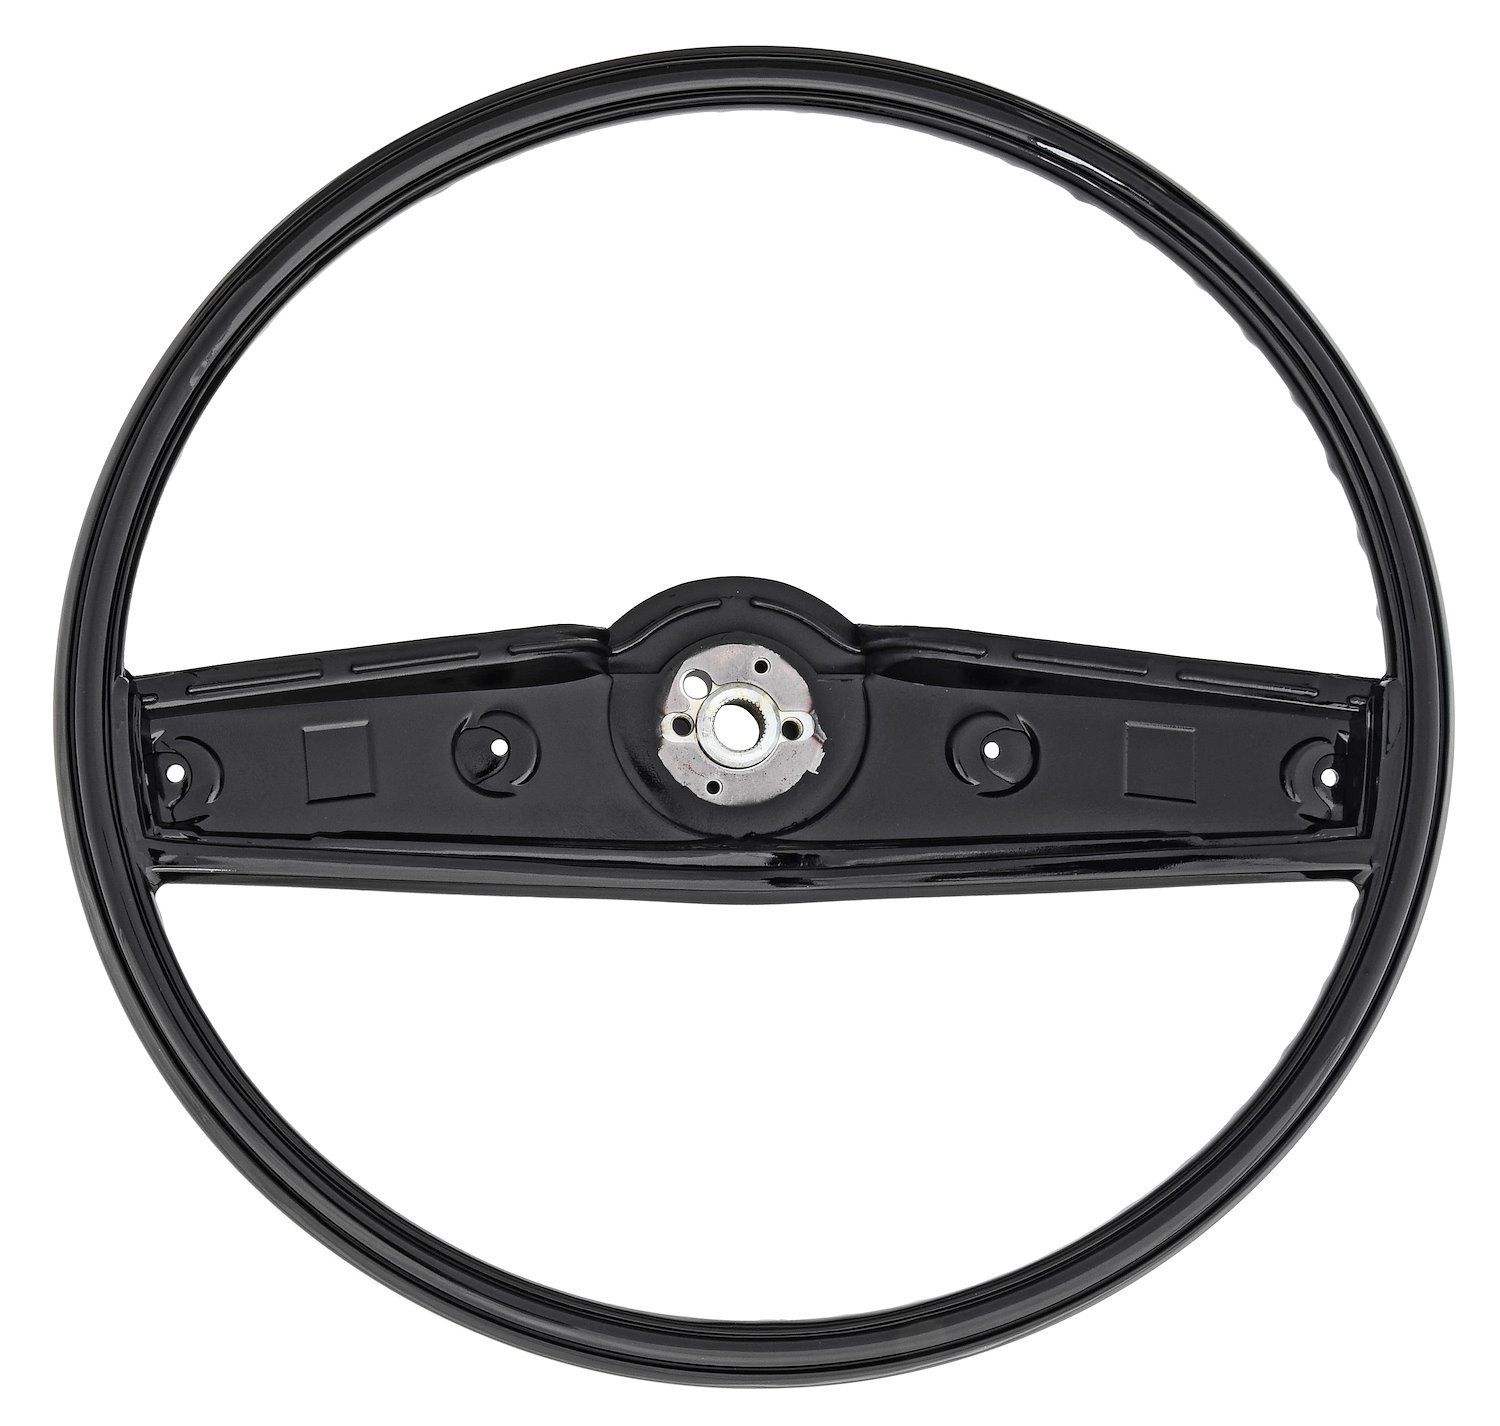 OE Style 2-Spoke Steering Wheel Fits Select 1969-1970 Chevrolet Models [Black]